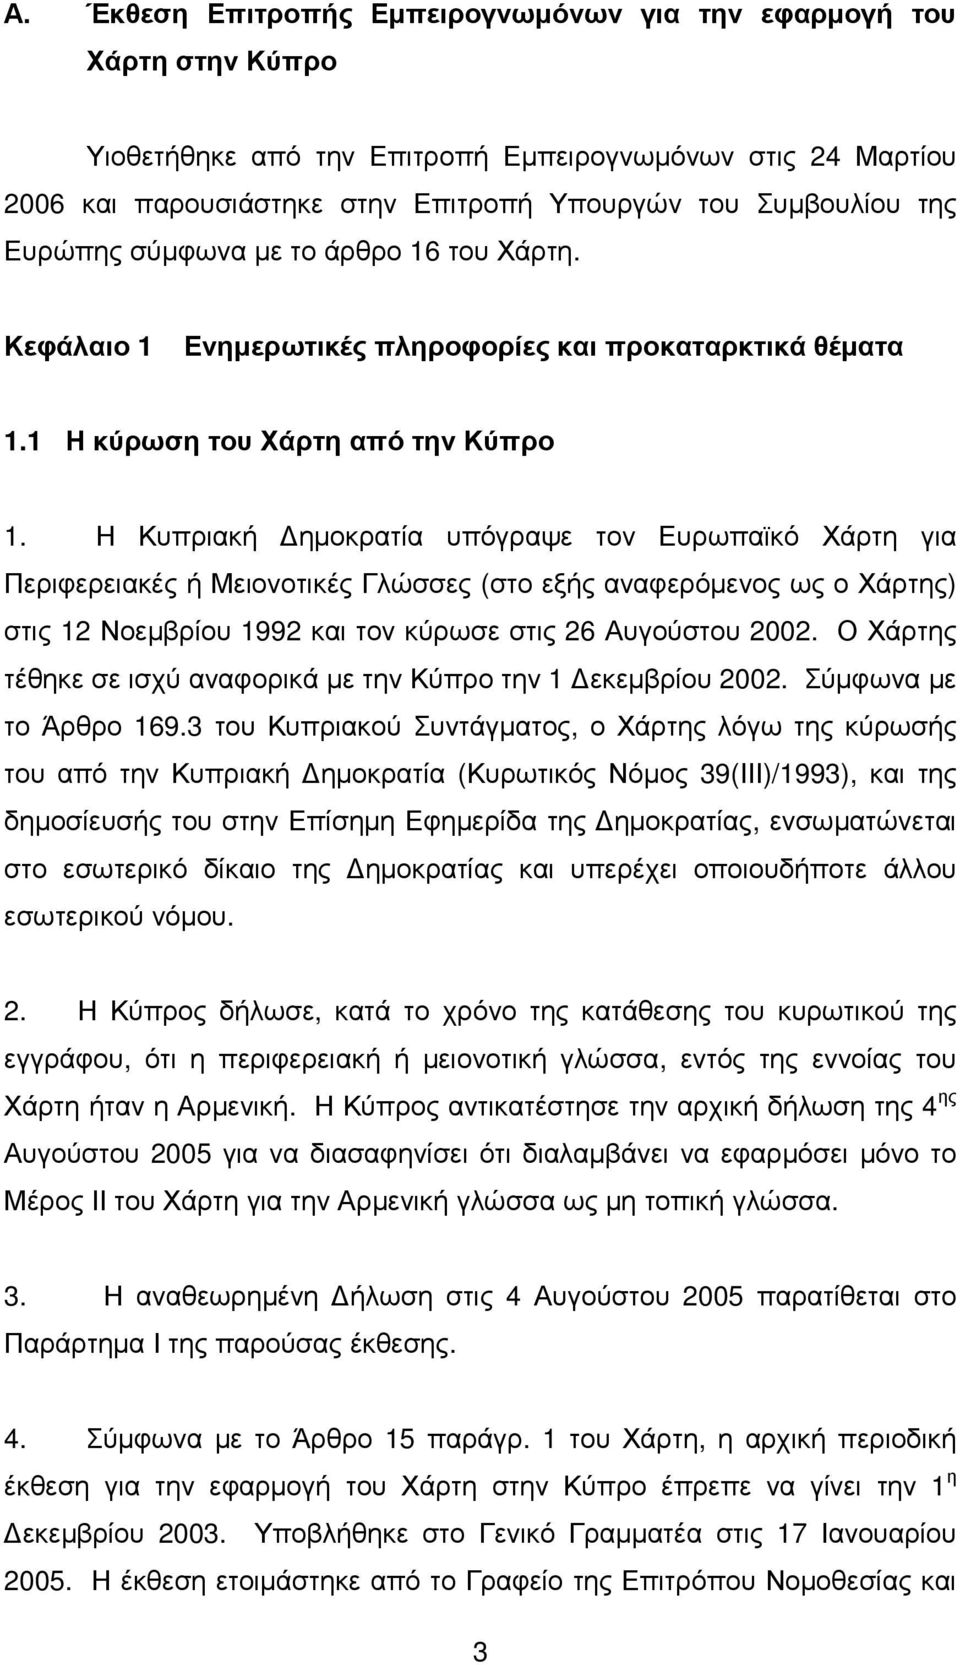 Η Κυπριακή ηµοκρατία υπόγραψε τον Ευρωπαϊκό Χάρτη για Περιφερειακές ή Μειονοτικές Γλώσσες (στο εξής αναφερόµενος ως ο Χάρτης) στις 12 Νοεµβρίου 1992 και τον κύρωσε στις 26 Αυγούστου 2002.